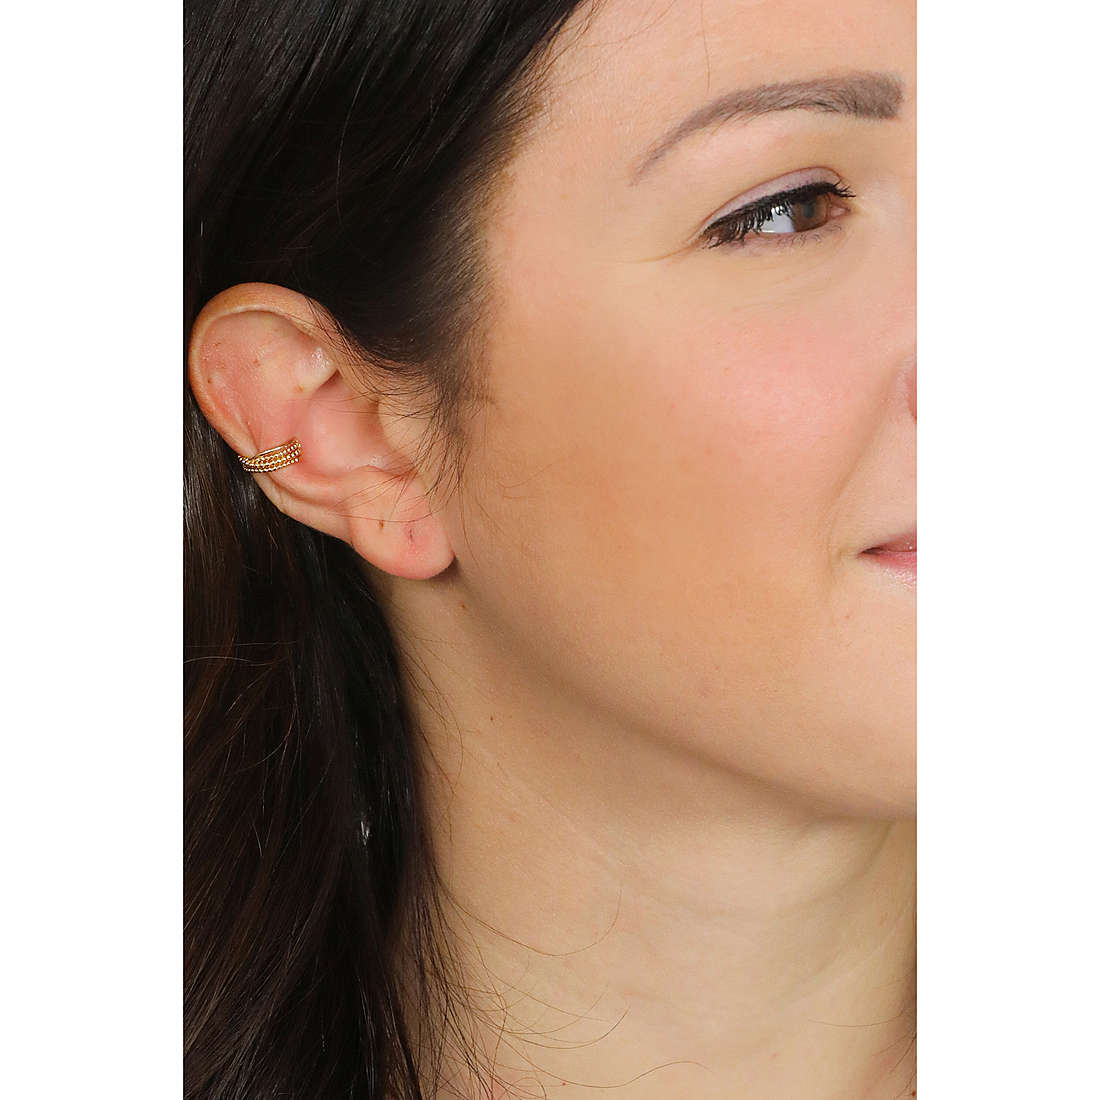 Rebecca earrings Golden ear woman SGEOOB22 wearing